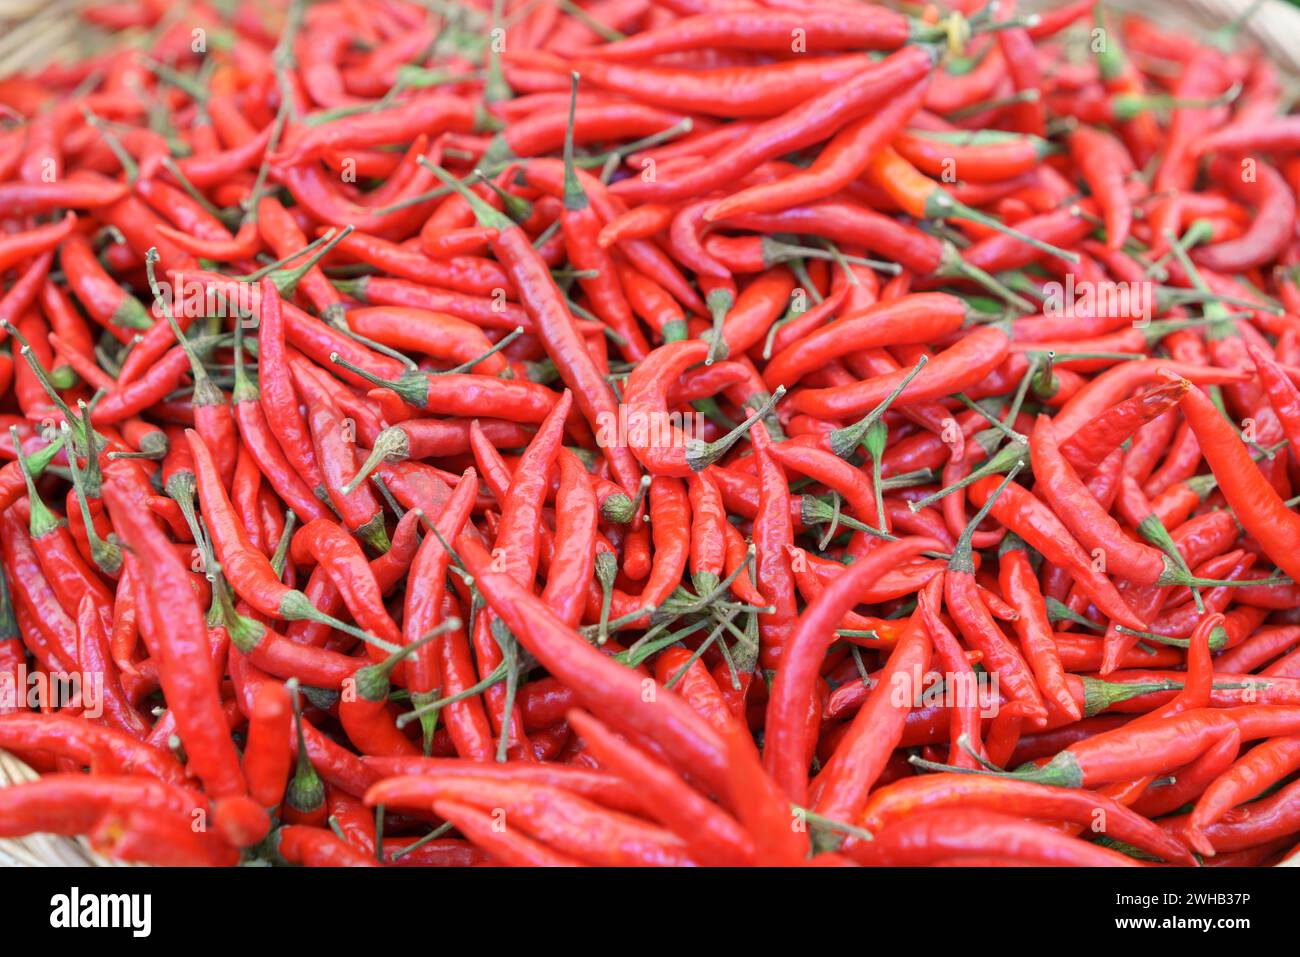 Gros plan d'un panier débordant de piments rouges éclatants, symbolisant la chaleur et la saveur dans les usages culinaires Banque D'Images